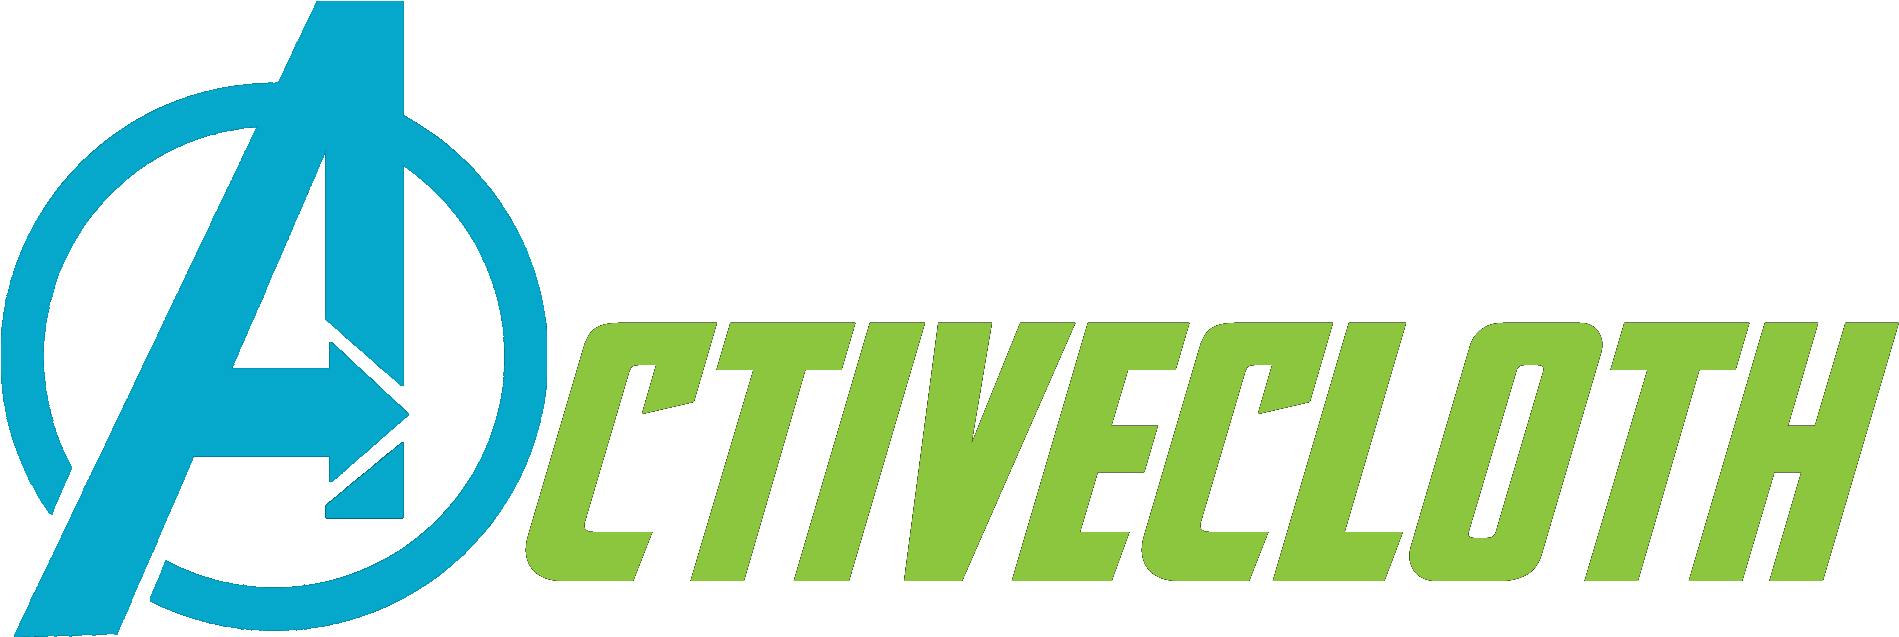 Activecloth Activecloth - Avenger Sticker (2000x748)